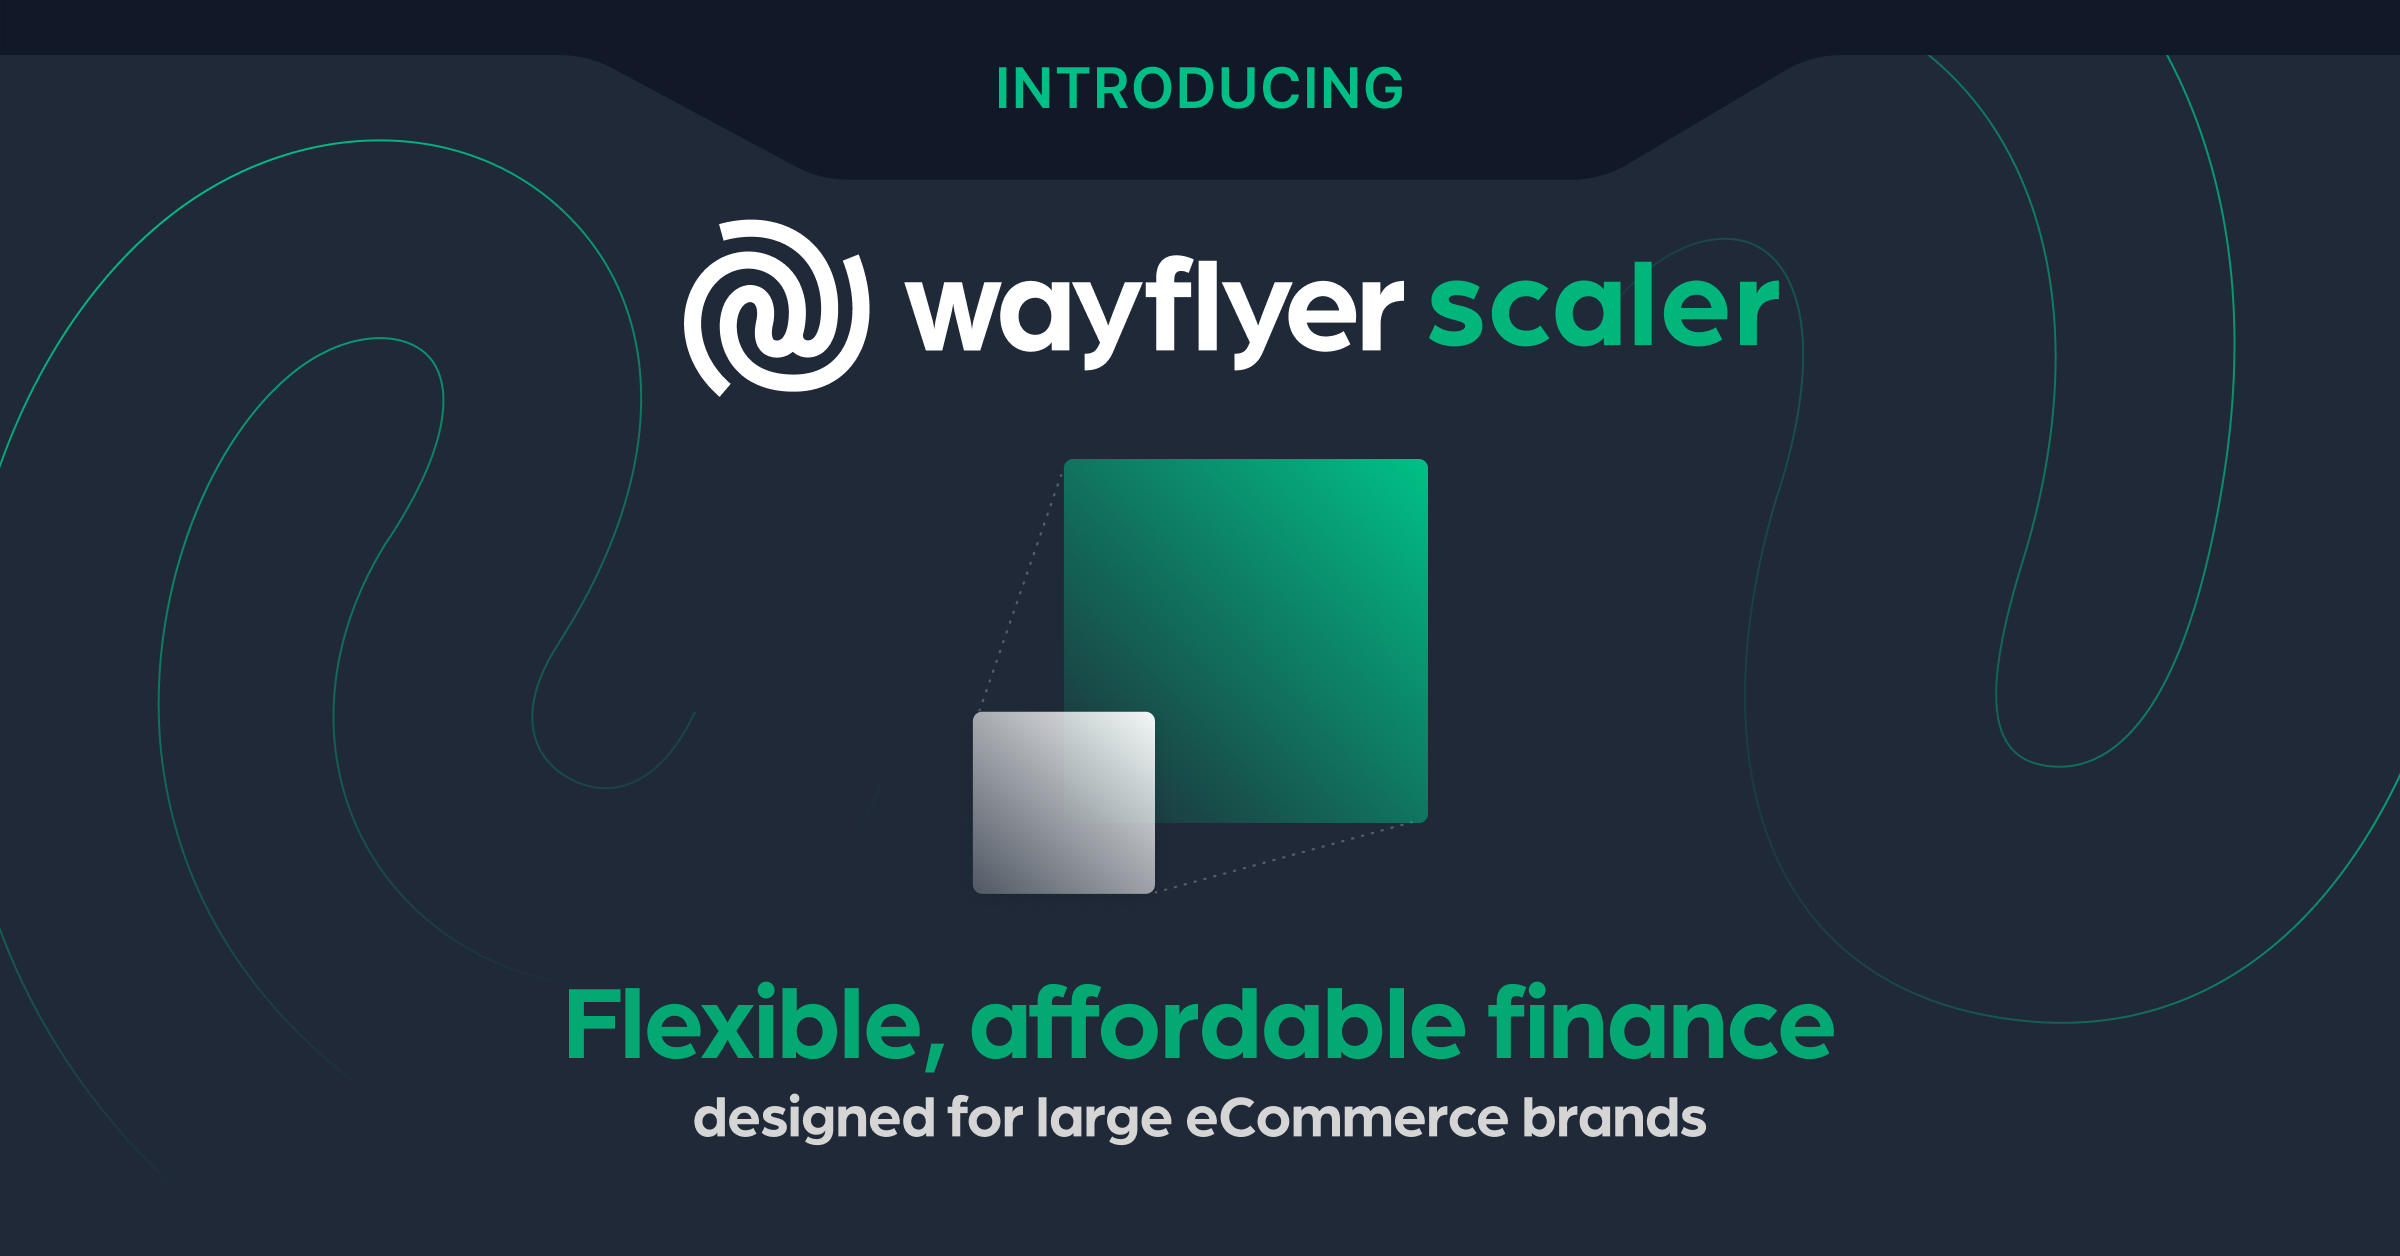 Presentación de Wayflyer Scaler: financiación flexible y asequible diseñada para grandes marcas de comercio electrónico